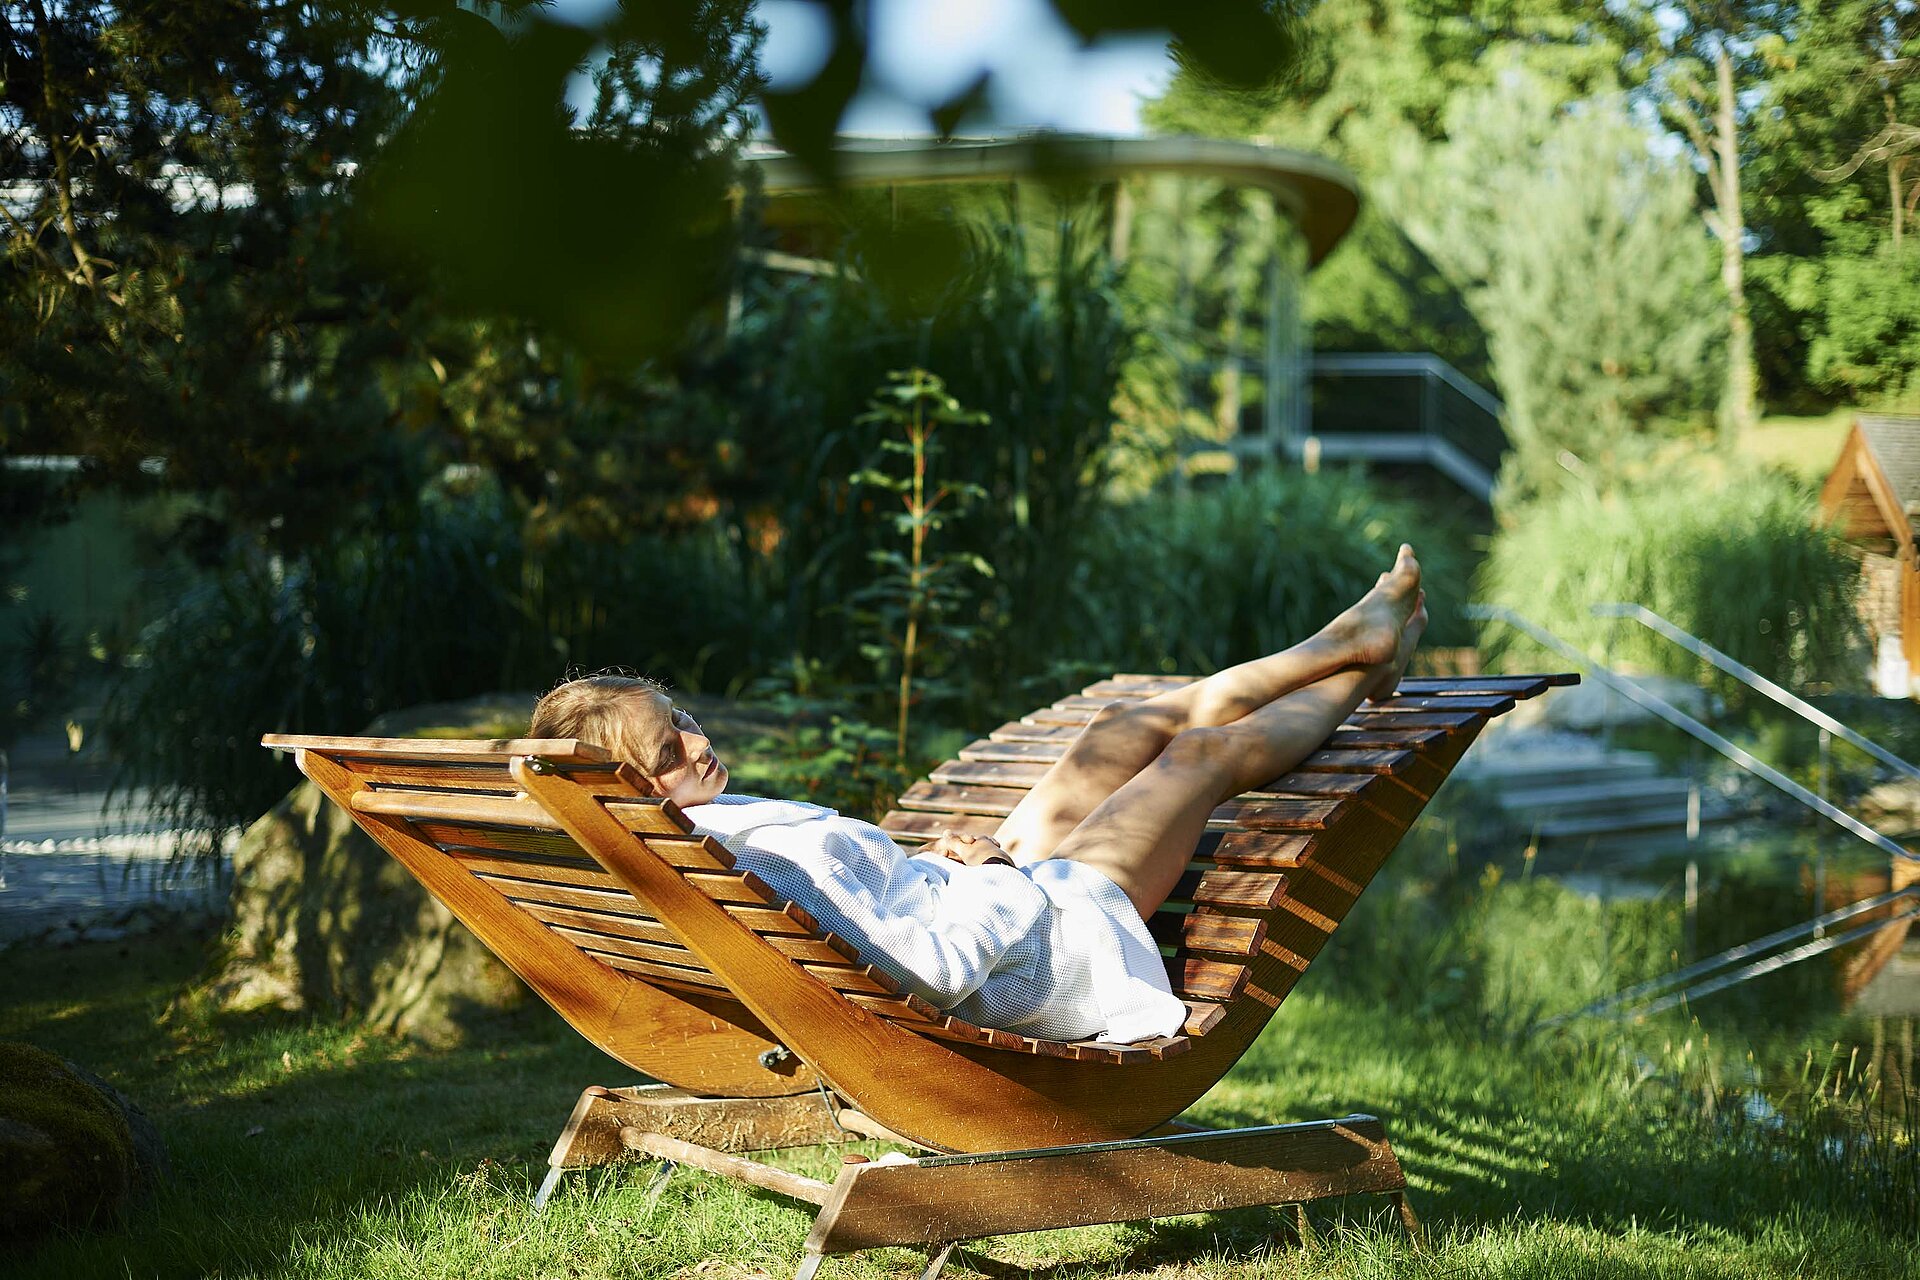 Eine körpergerechte Holzliege steht inmitten einer grünen Oase. Eine junge Frau in weißem Bademantel genießt hier Ruhe und Entspannung pur.